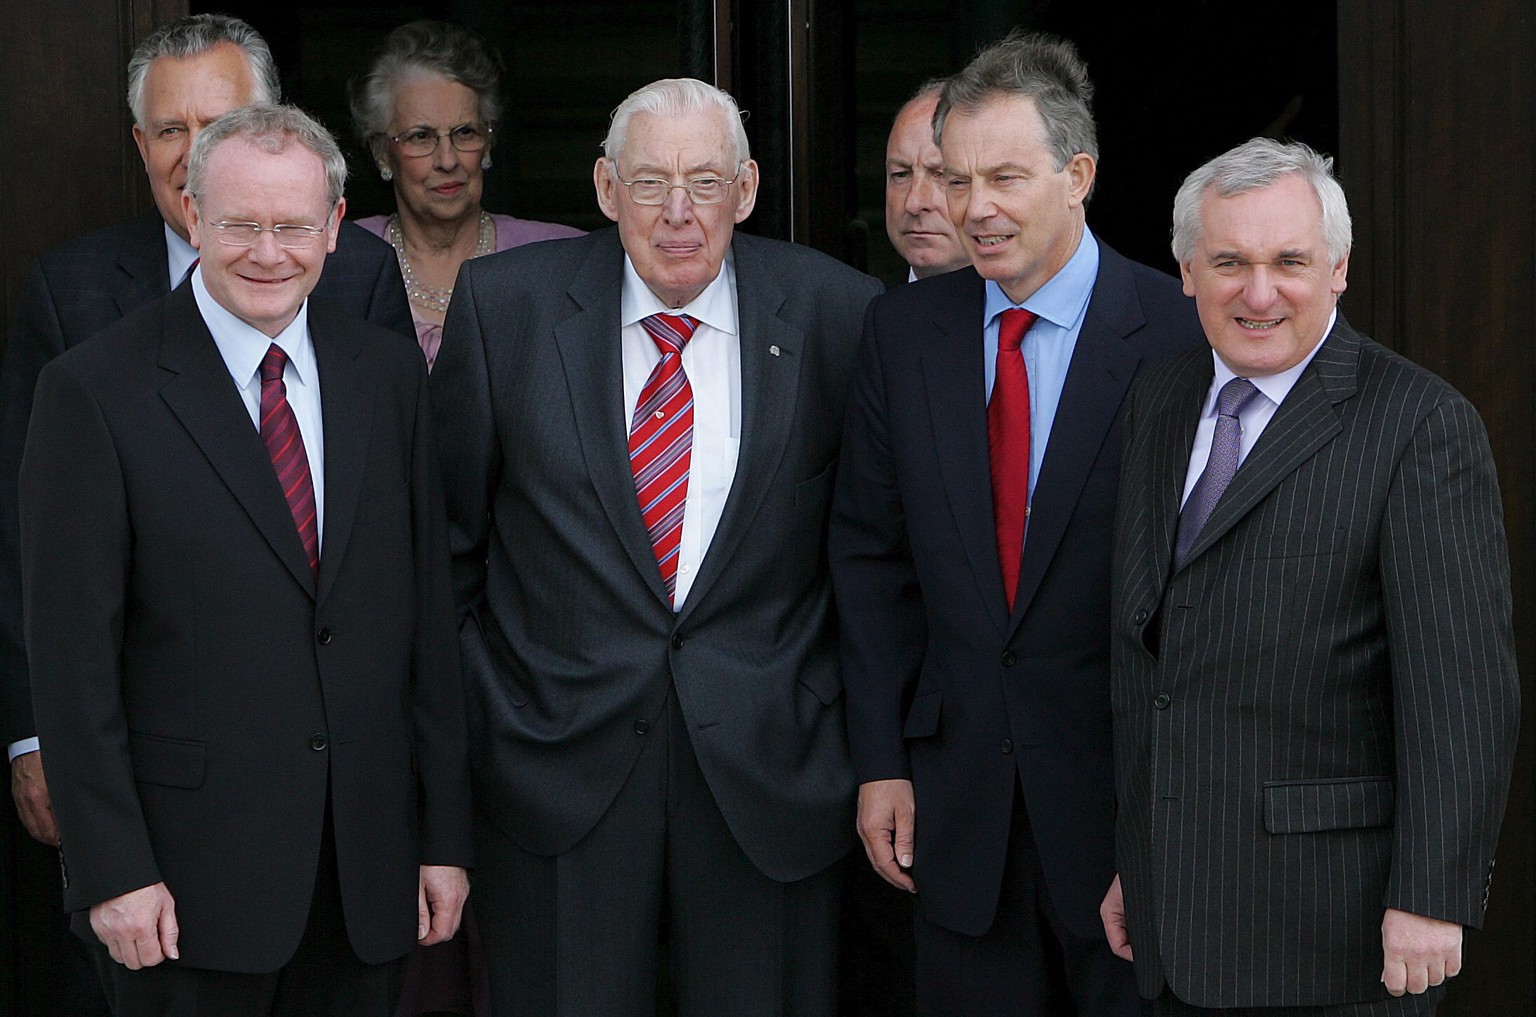 Ein Bild vom selben Tag. McGuinnes und Paisley mit den damaligen Premierministern von Grossbritannien (Tony Blair) und Irland (Bertie Ahern).